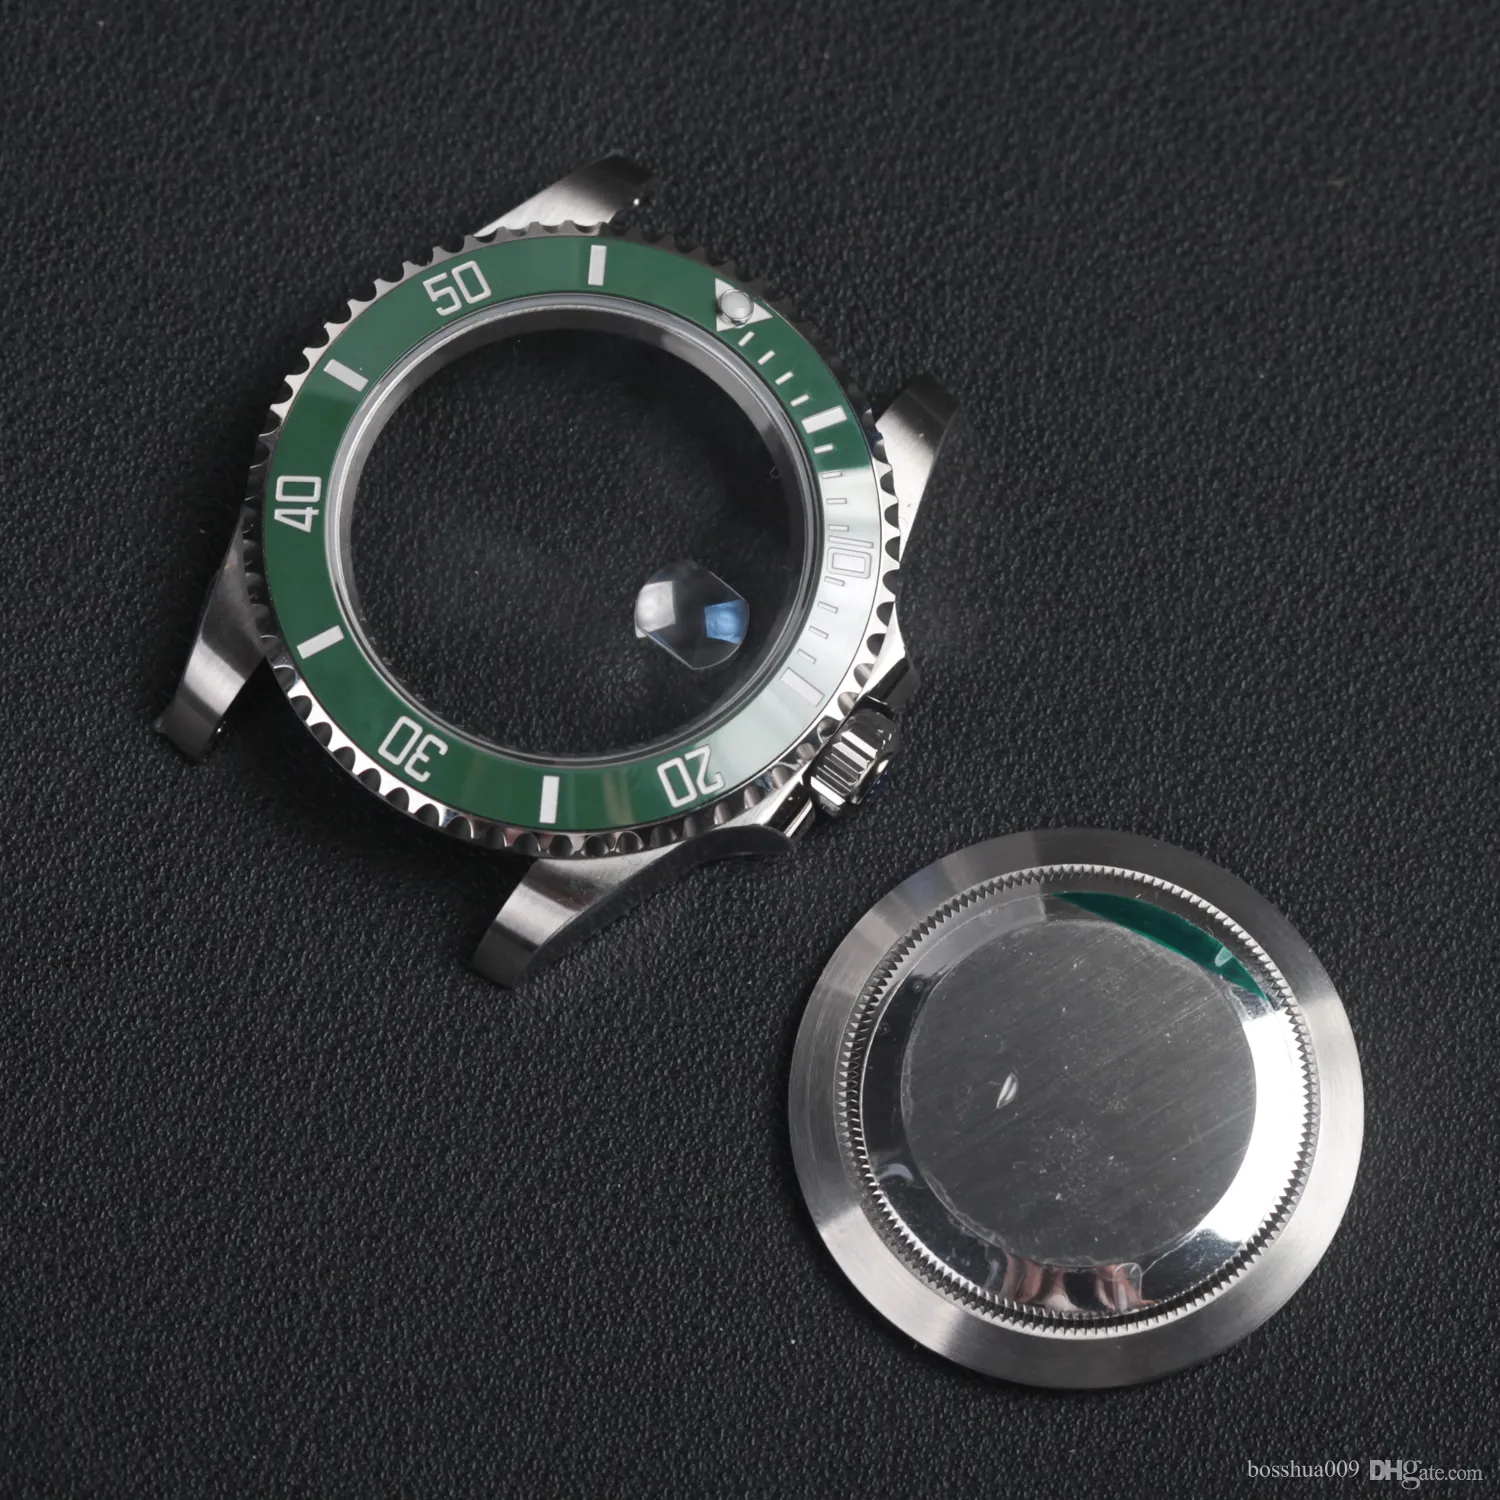 Peças de relógio de movimento 41mm 3235, caixa de relógio de aço inoxidável 904l com face csystal de safira moldura de cerâmica verde 126610